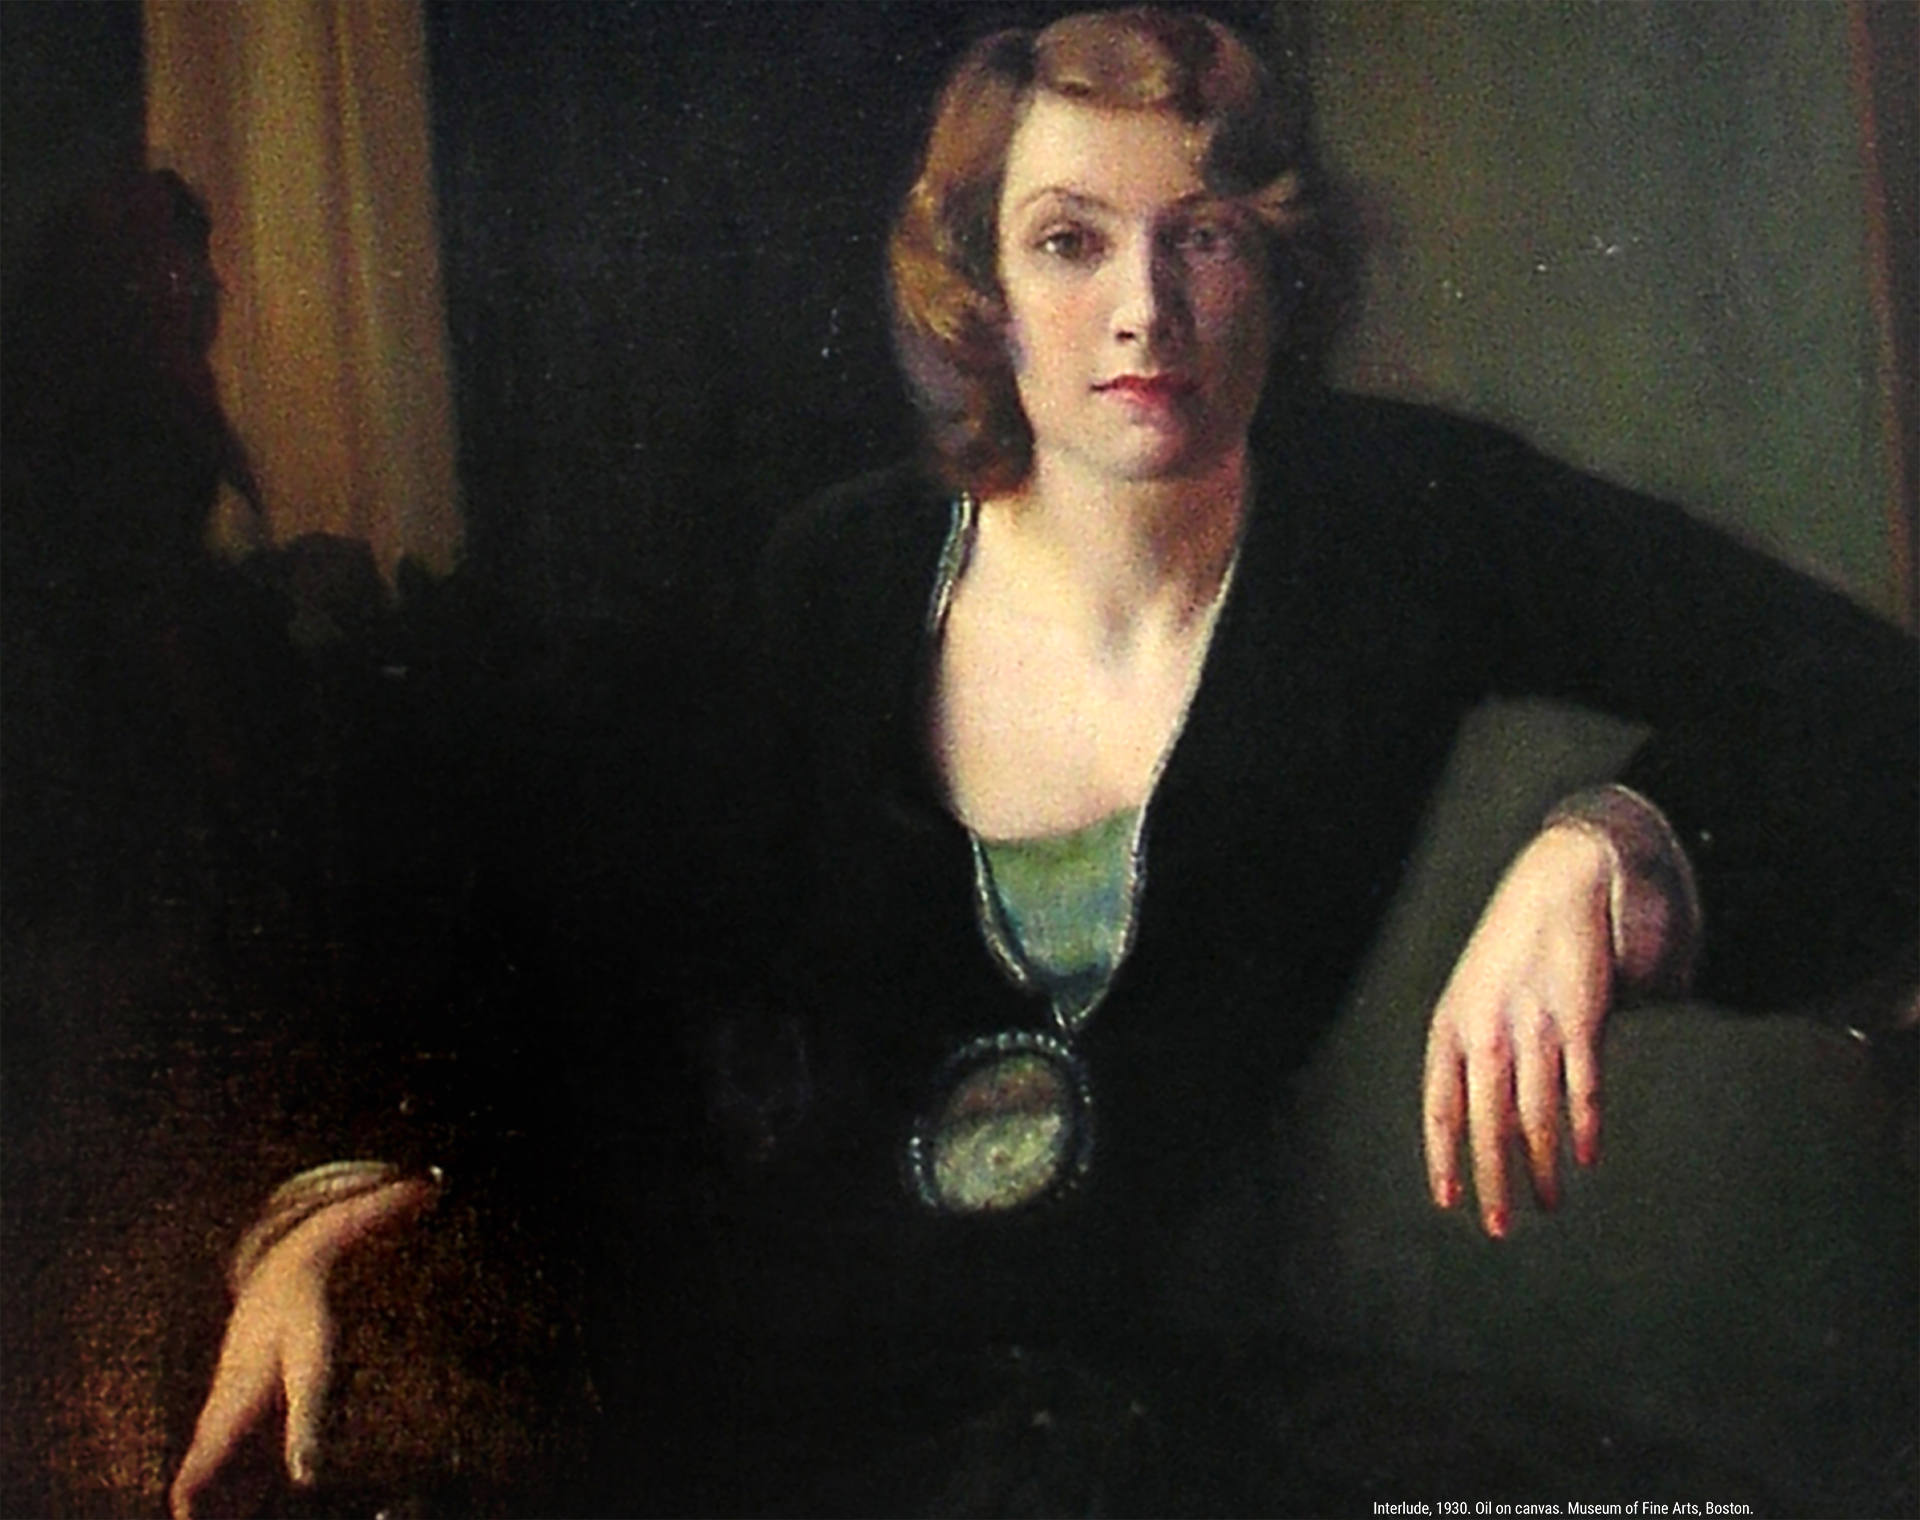 Interlude, 1930. Oil on canvas. Museum of Fine Arts, Boston.